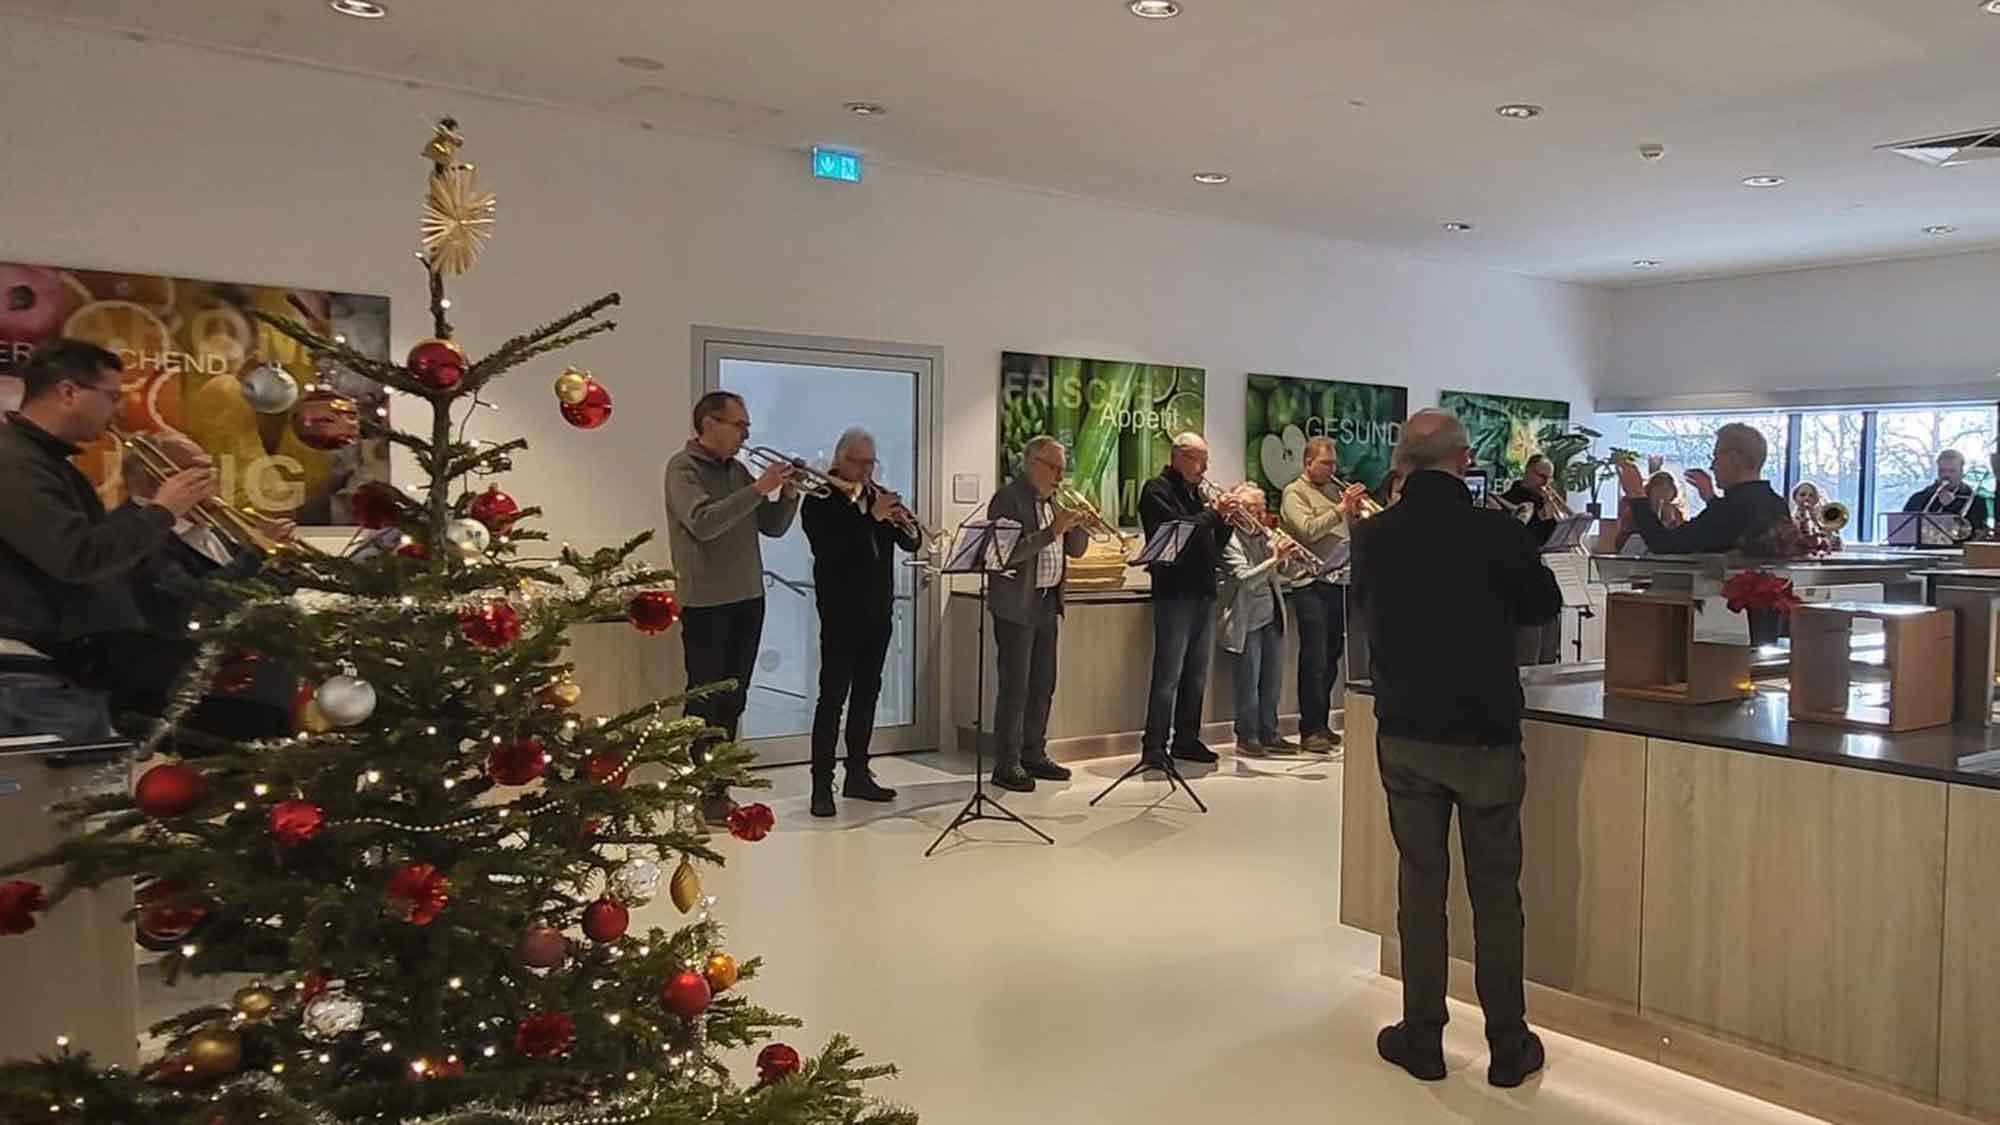 Posaunenchor erfreut Patienten im Advent, viel Applaus für musikalische Überraschung